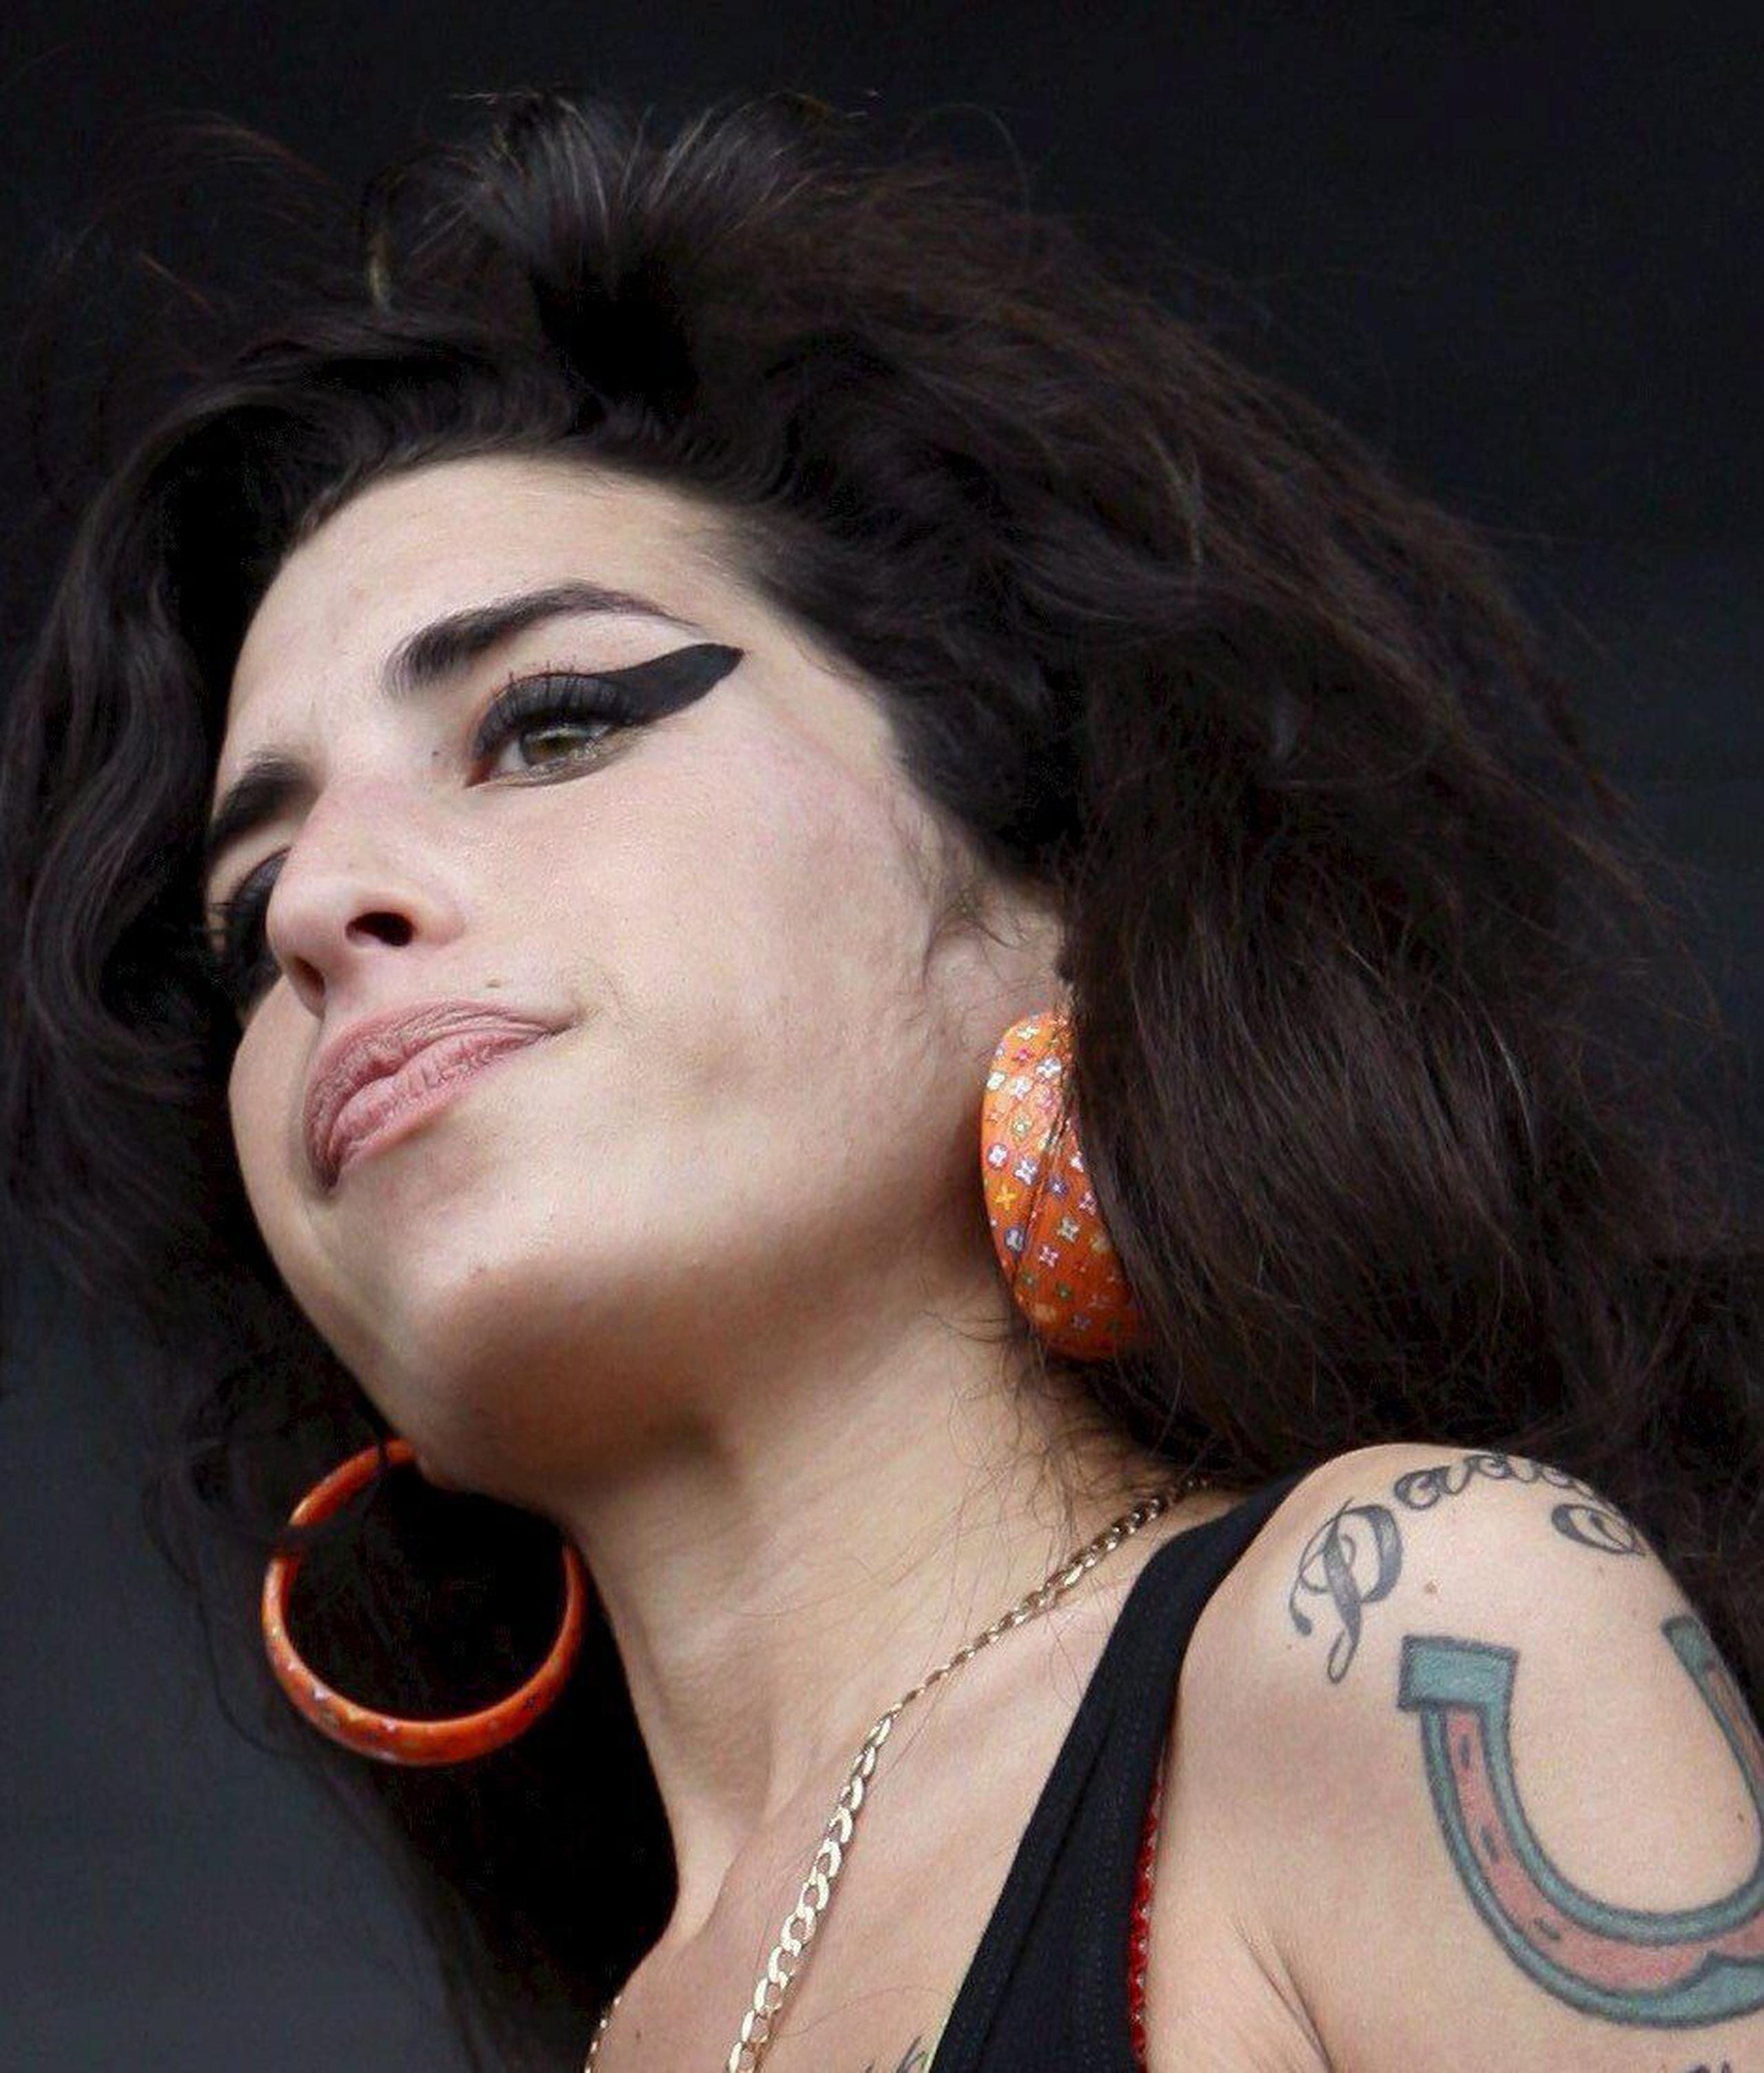 La cantante británica Amy Winehouse, fallecida en 2011 a los 27 años.